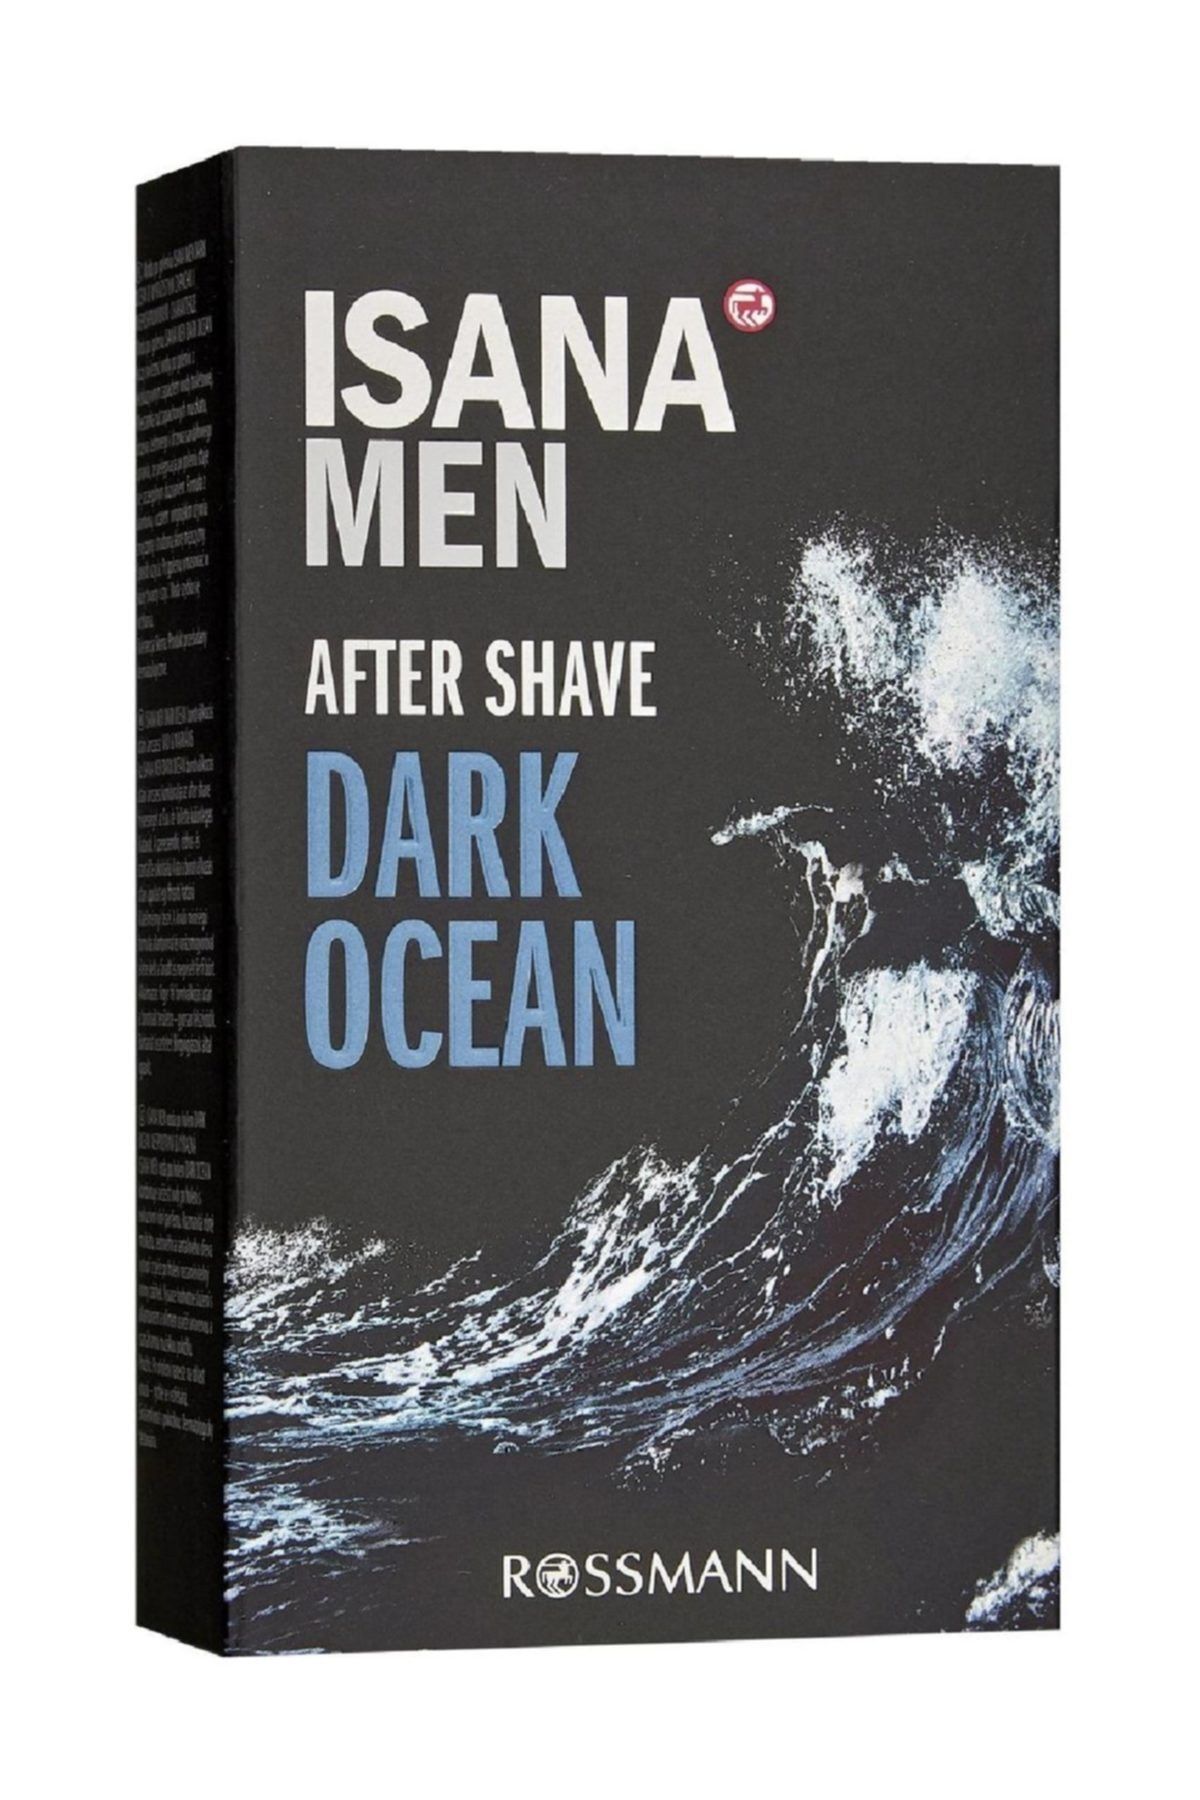 ISANA MEN Rossmann Men Dark Ocean After Shave 100 ml 4305615614274